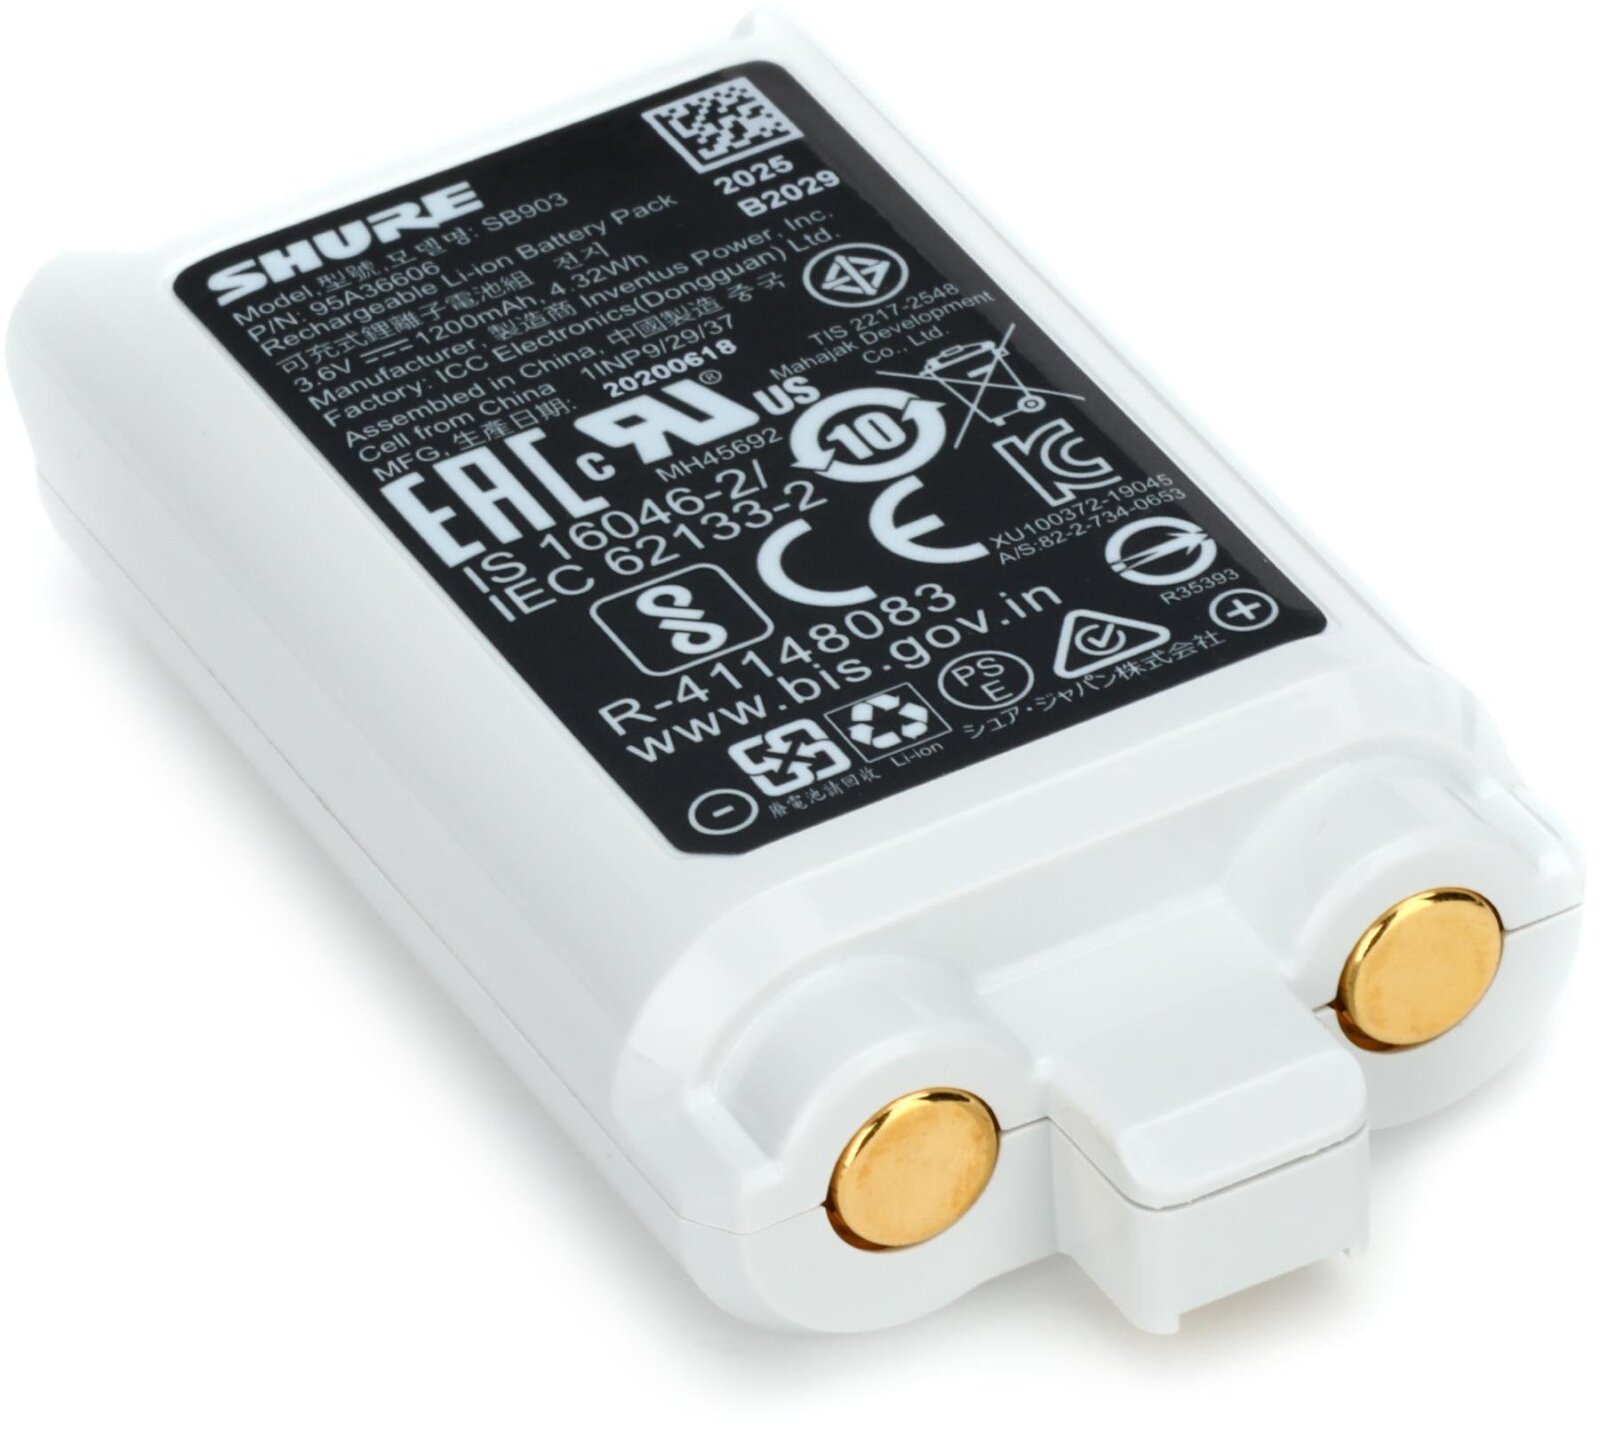 Shure Batterie au lithium-ion (3,6 V / 1200 mAh), autonomie jusqu